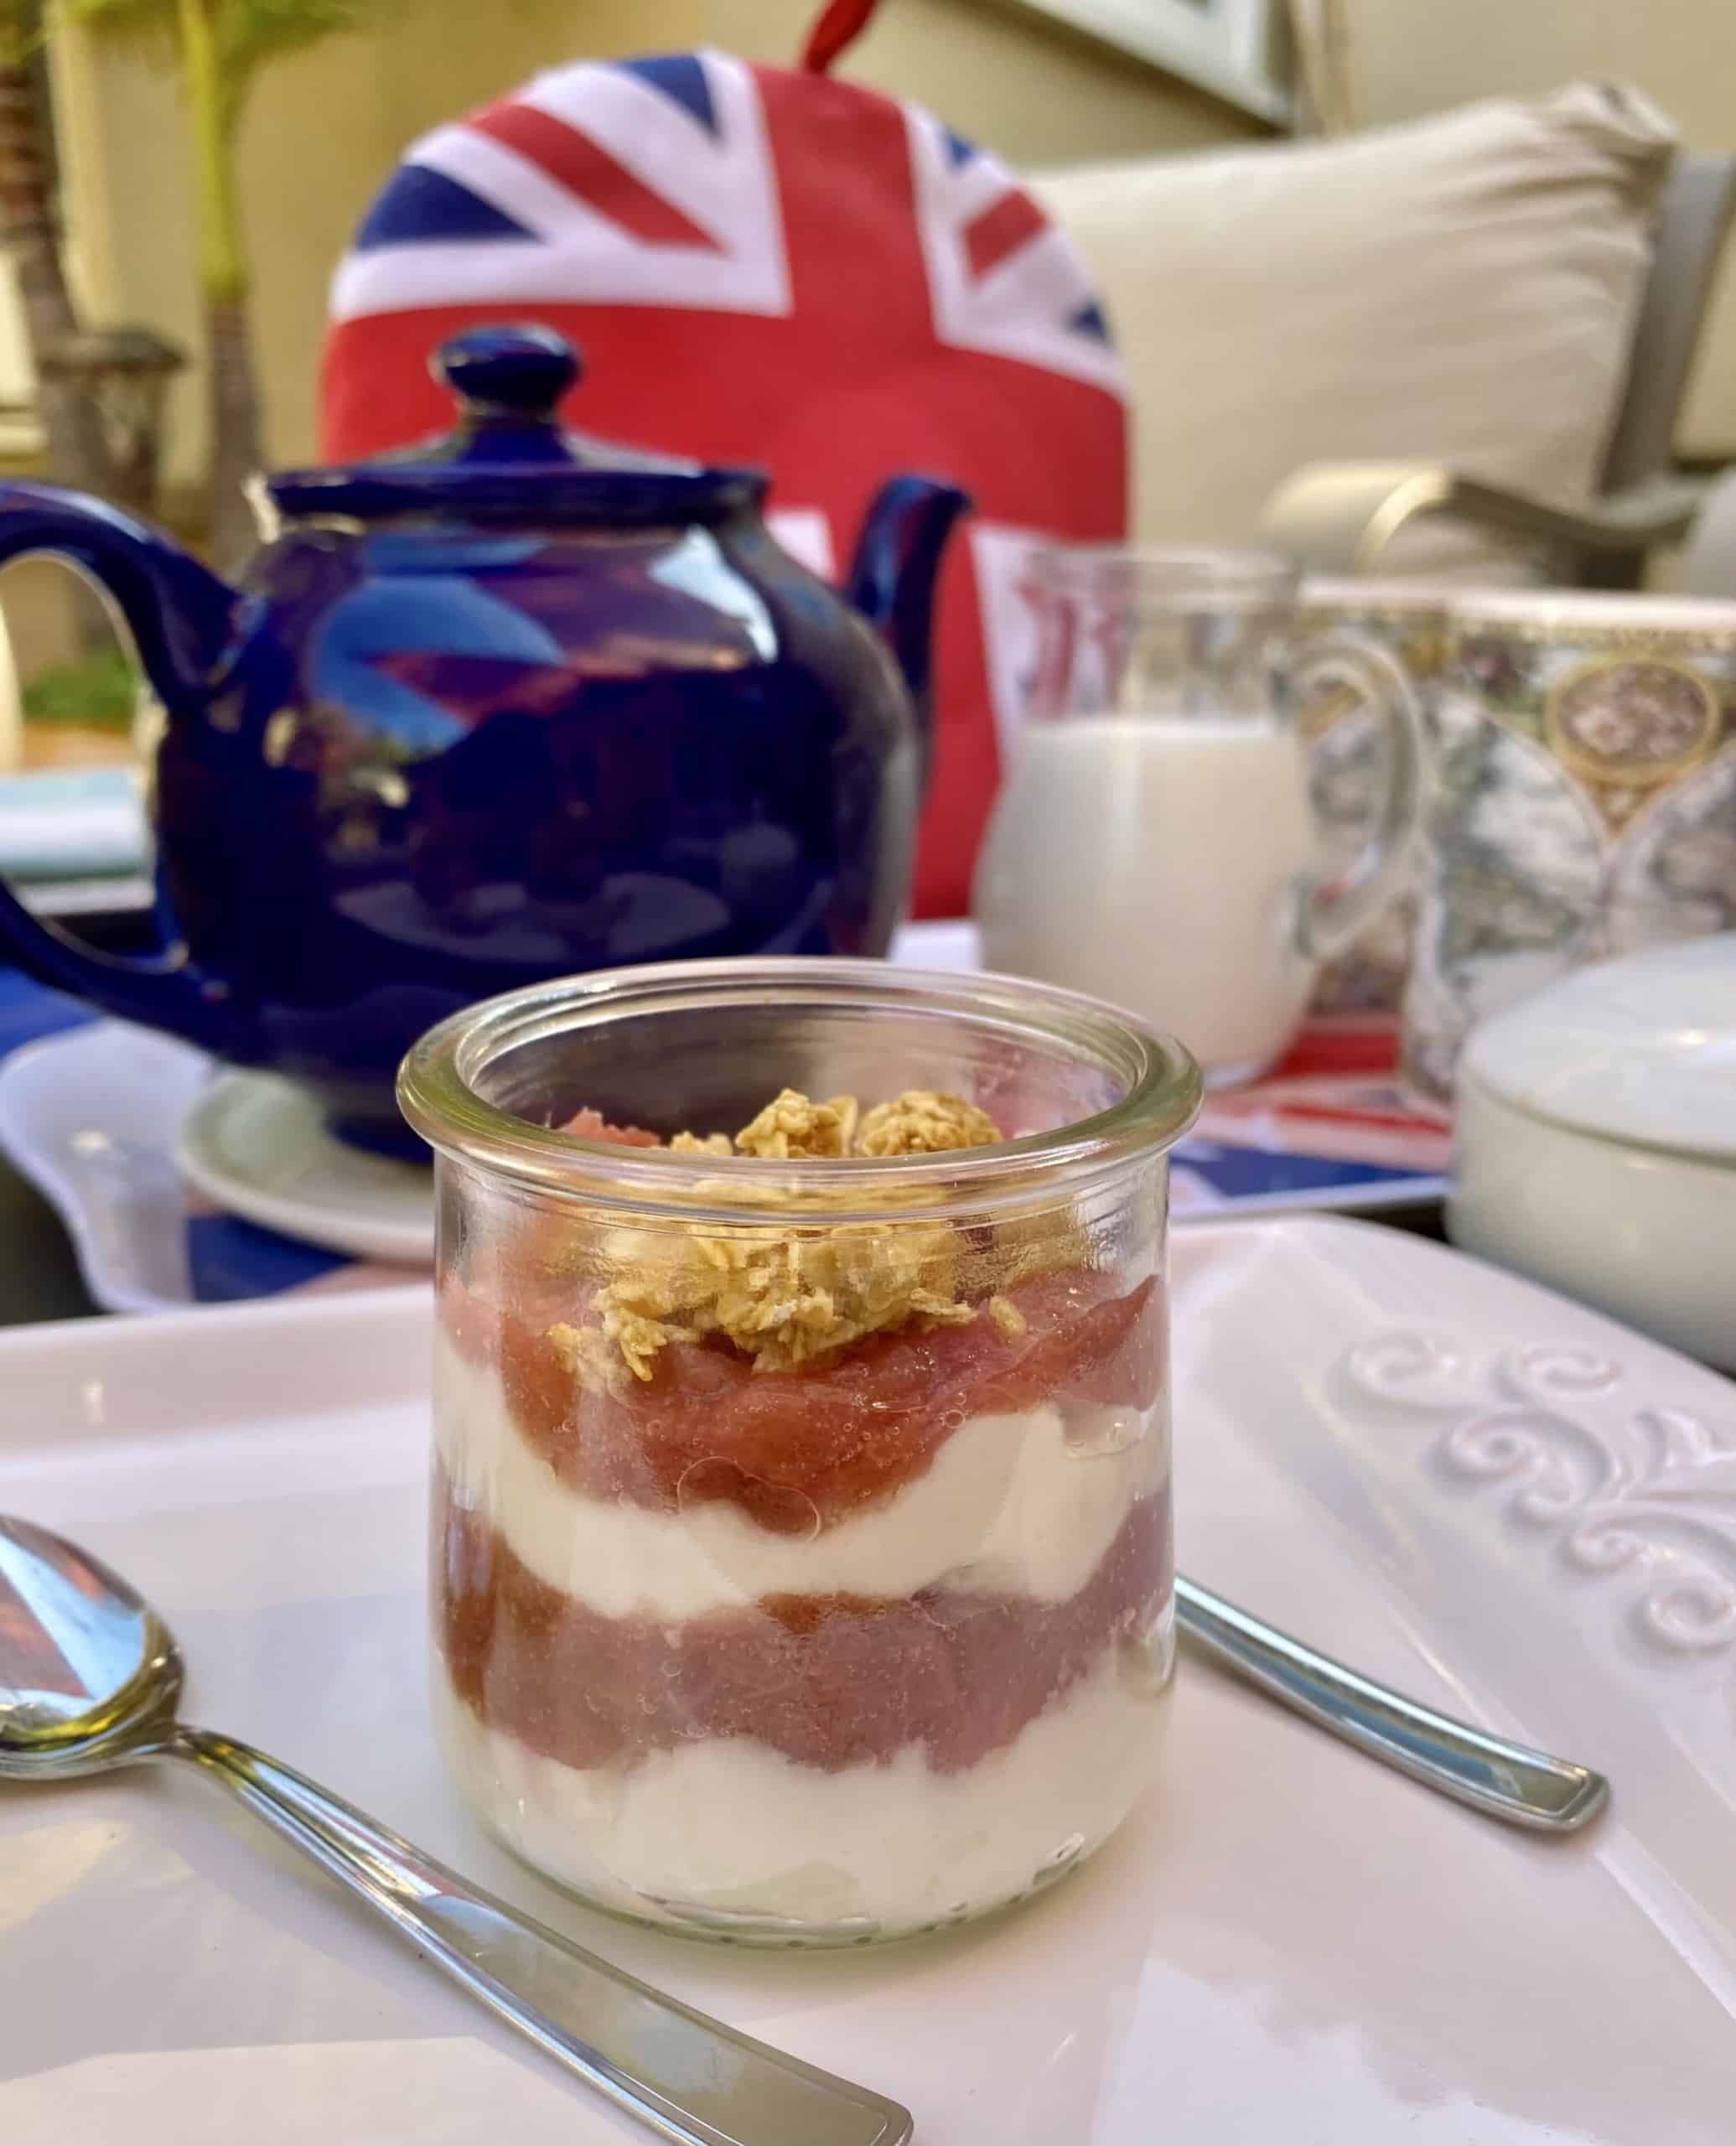 crunchy rhubarb yogurt in a jar